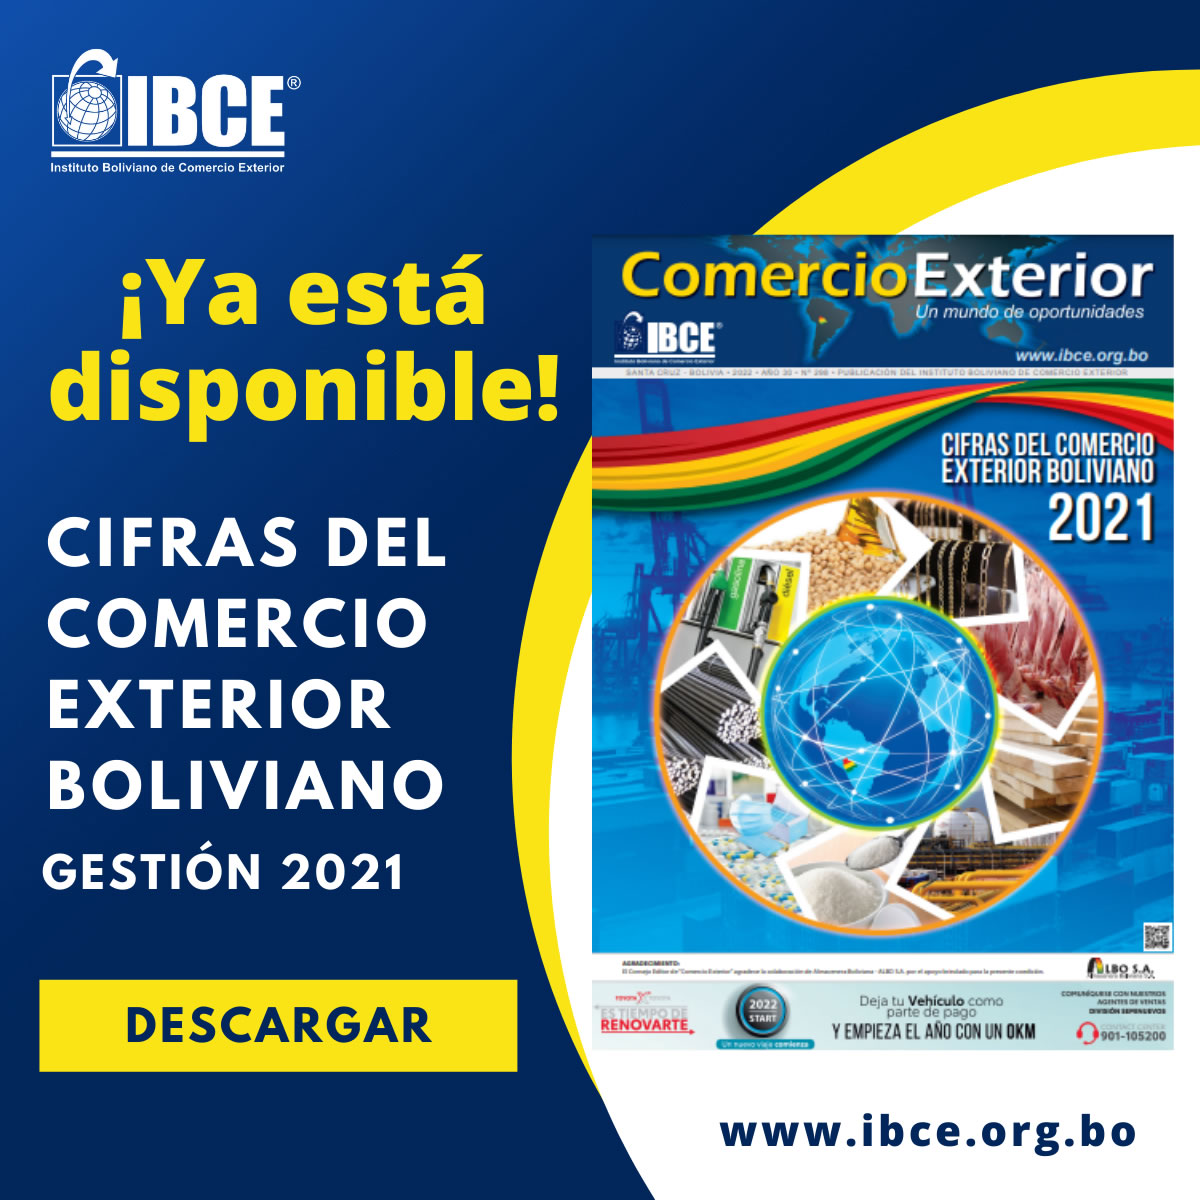 ¡DESCARGUE GRATIS! - EDICIÓN ESTRELLA - Cifras del Comercio Exterior Boliviano